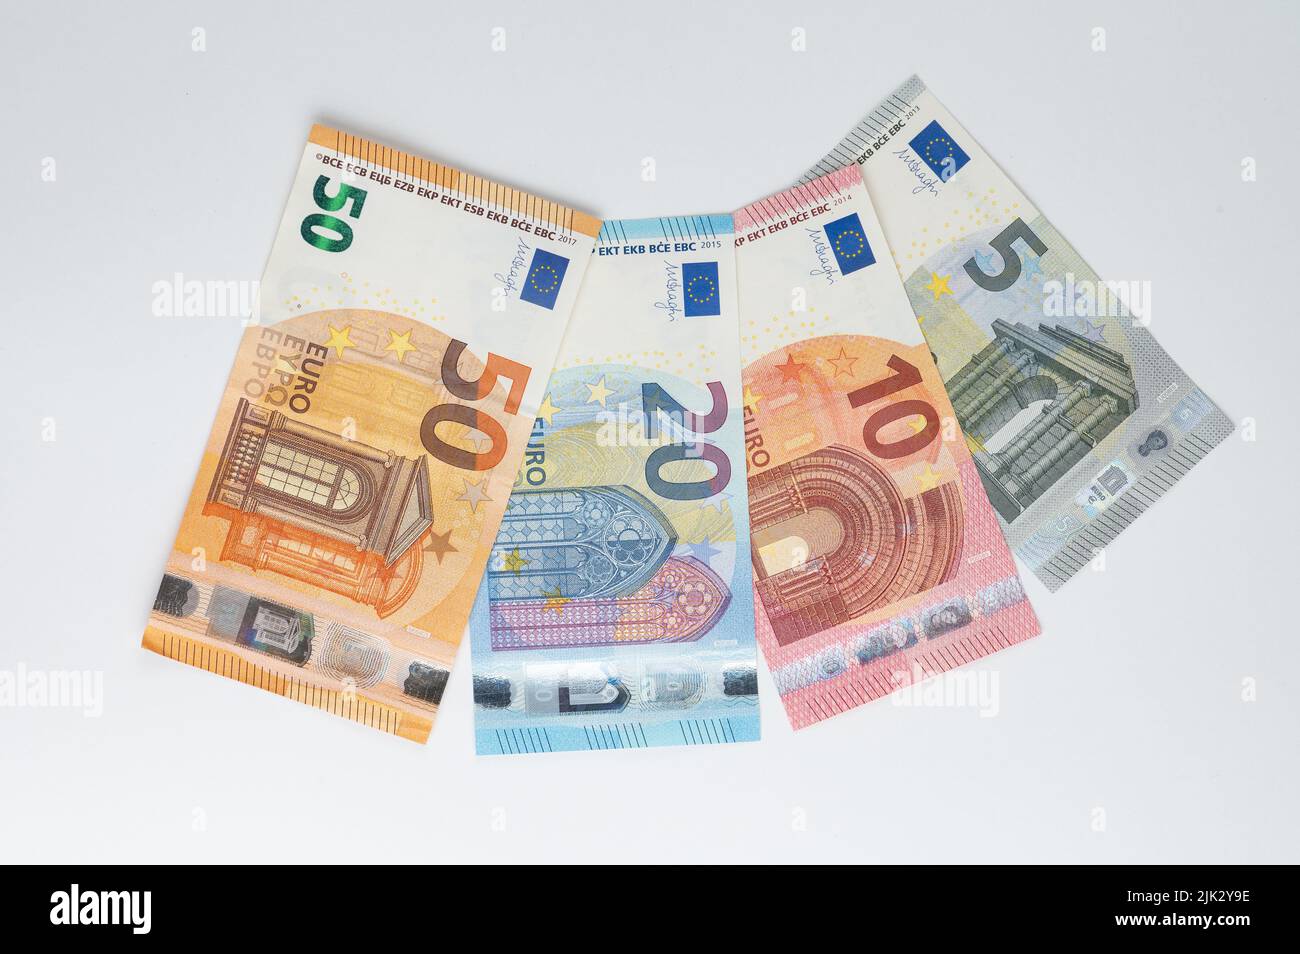 Las dos caras del billete de 5 euros fotografías e imágenes de alta  resolución - Alamy